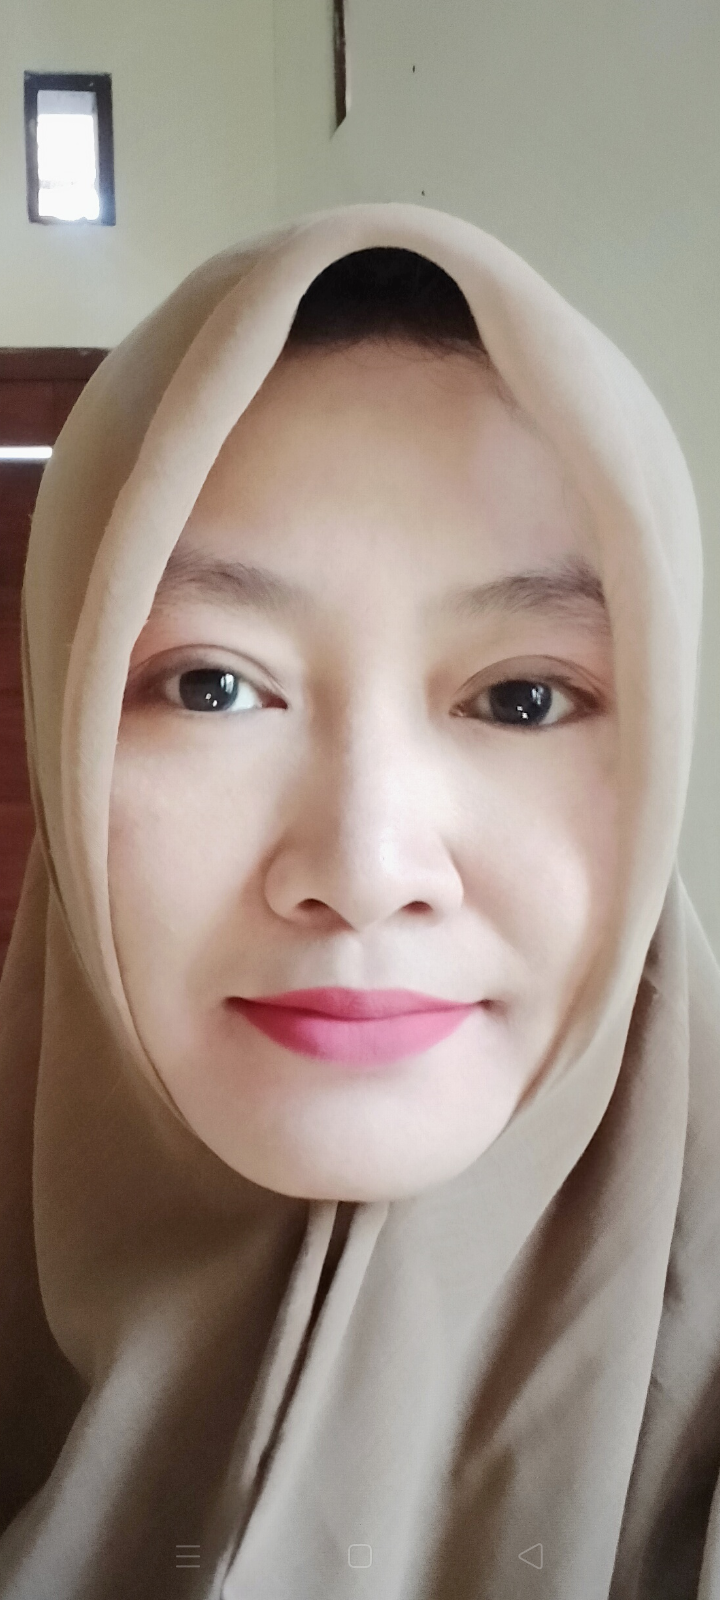 Dewi 085878887534 - Janda Akhwat Muslimah Surabaya 46 tahun Mencari Kekasih/Calon suami Perjaka atau Duda - SatukanCinta